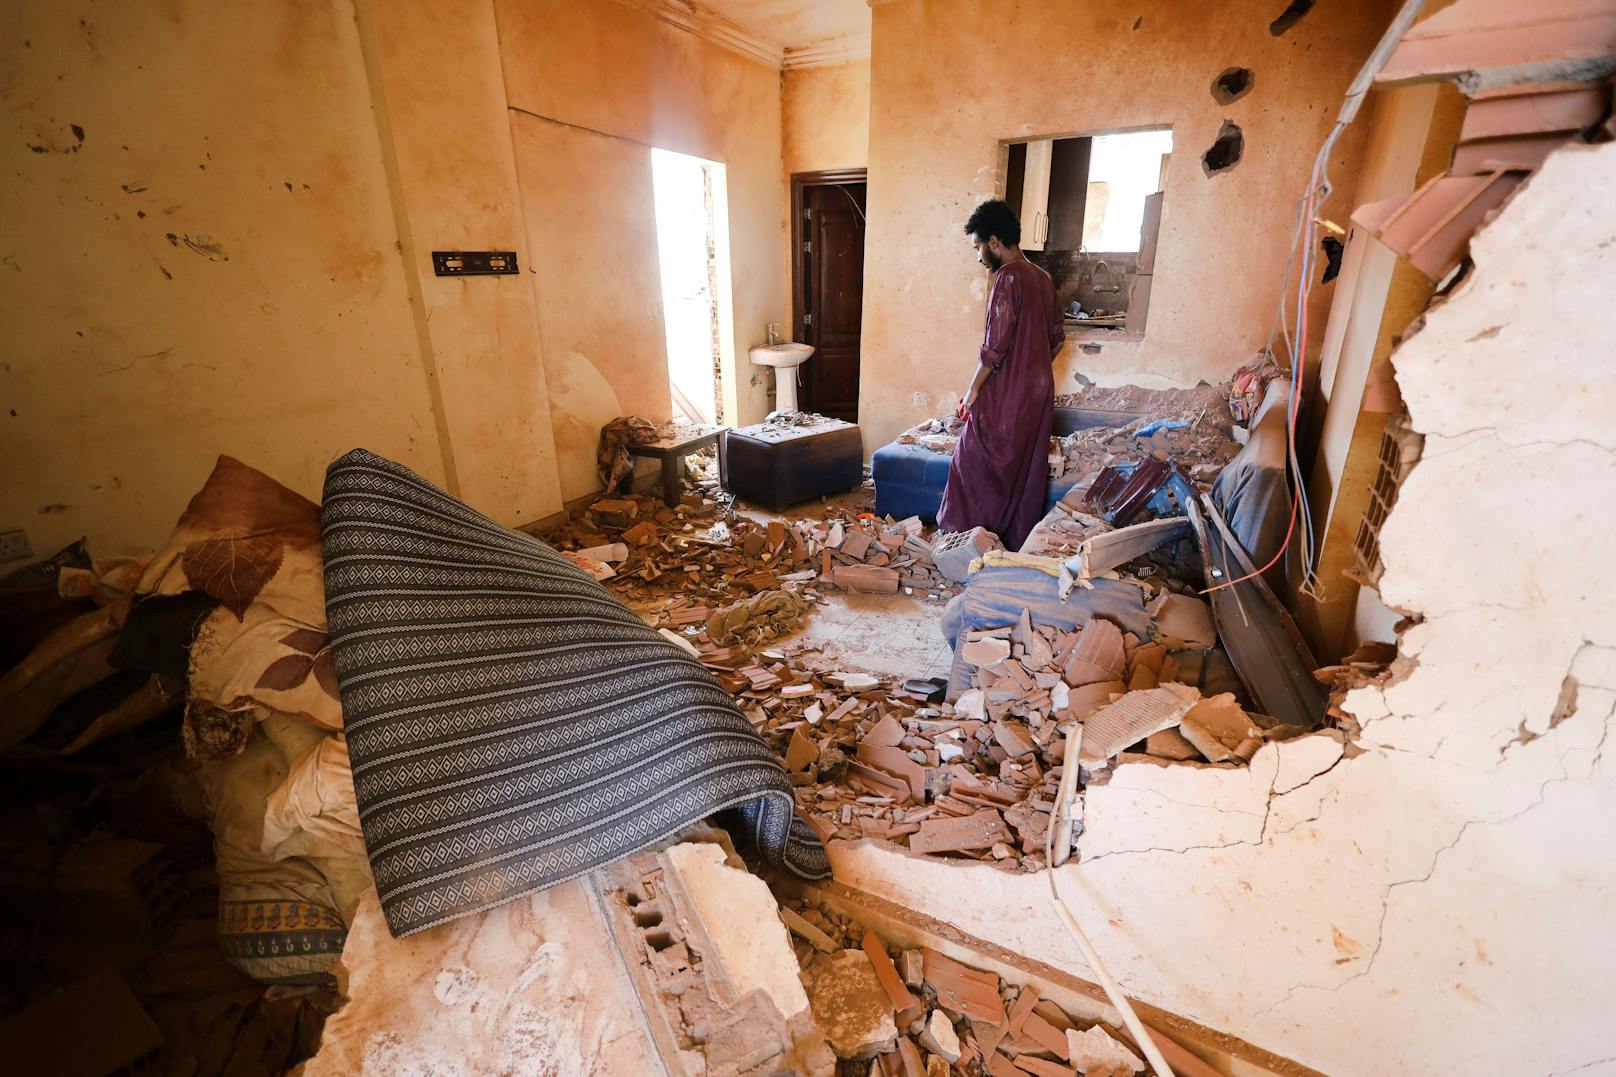 270 Tote, 2600 Verletzte – darum eskaliert Lage im Sudan